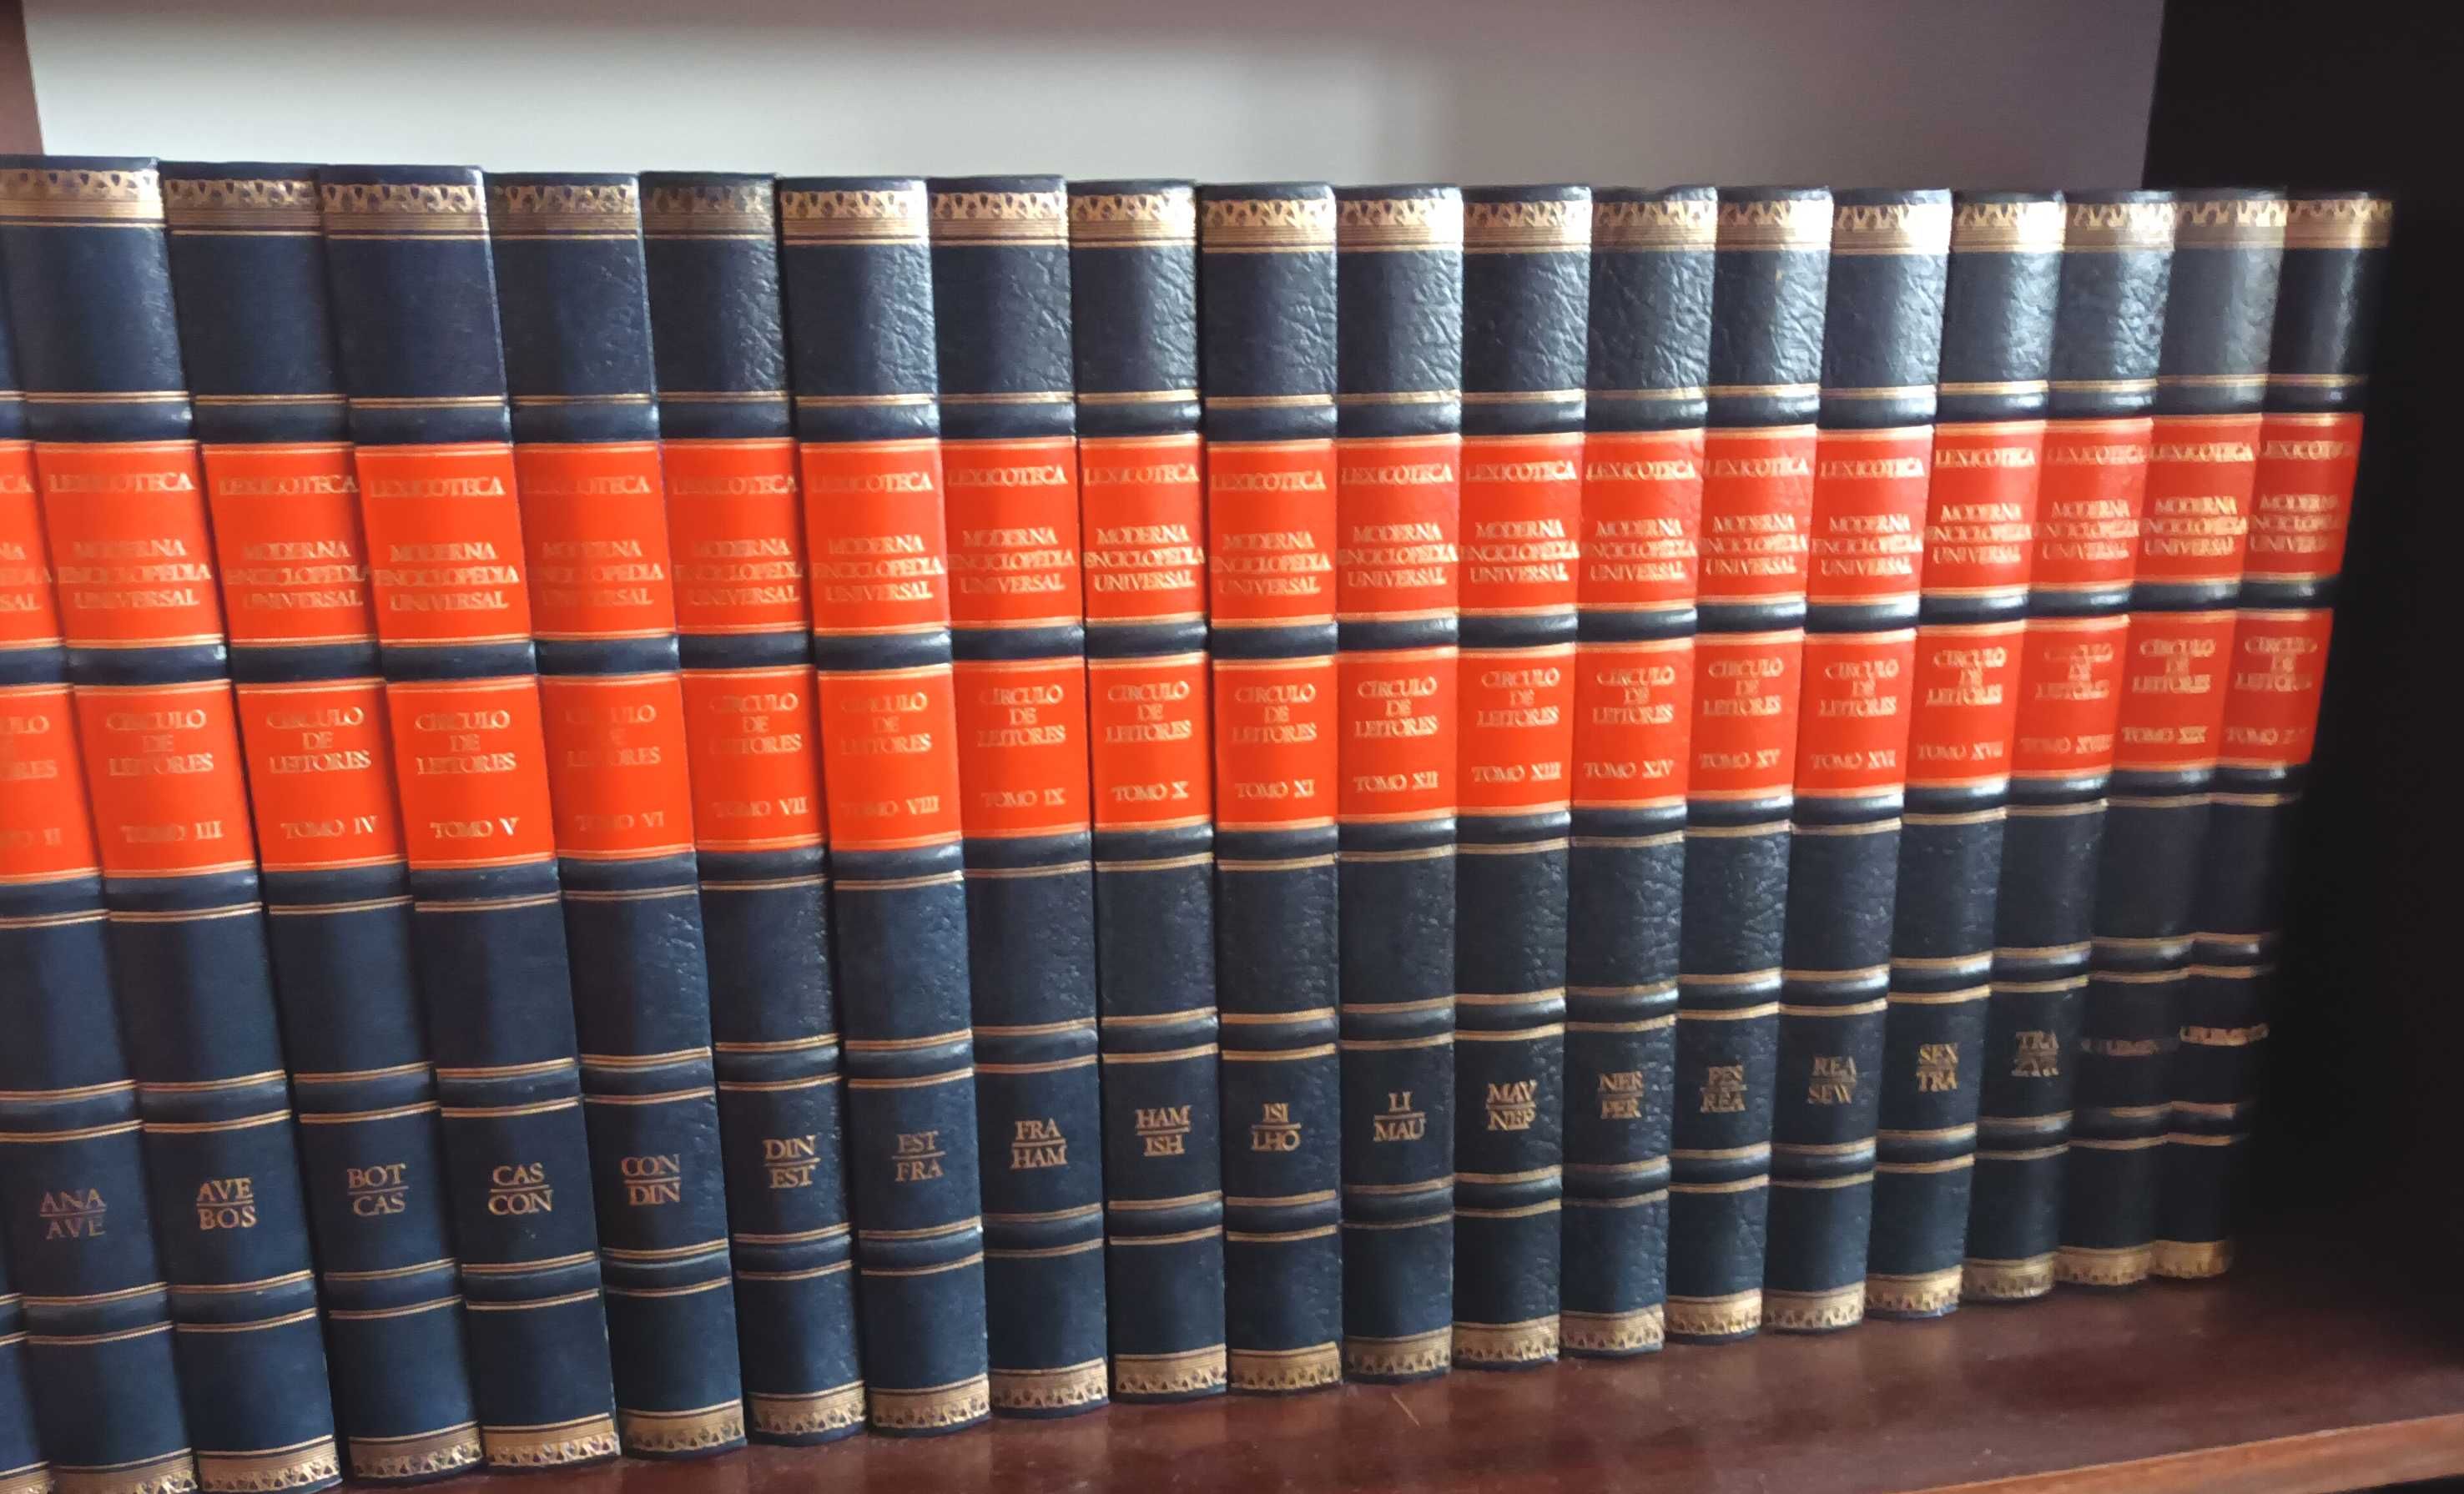 enciclopédia em língua portuguesa com 20 volumes